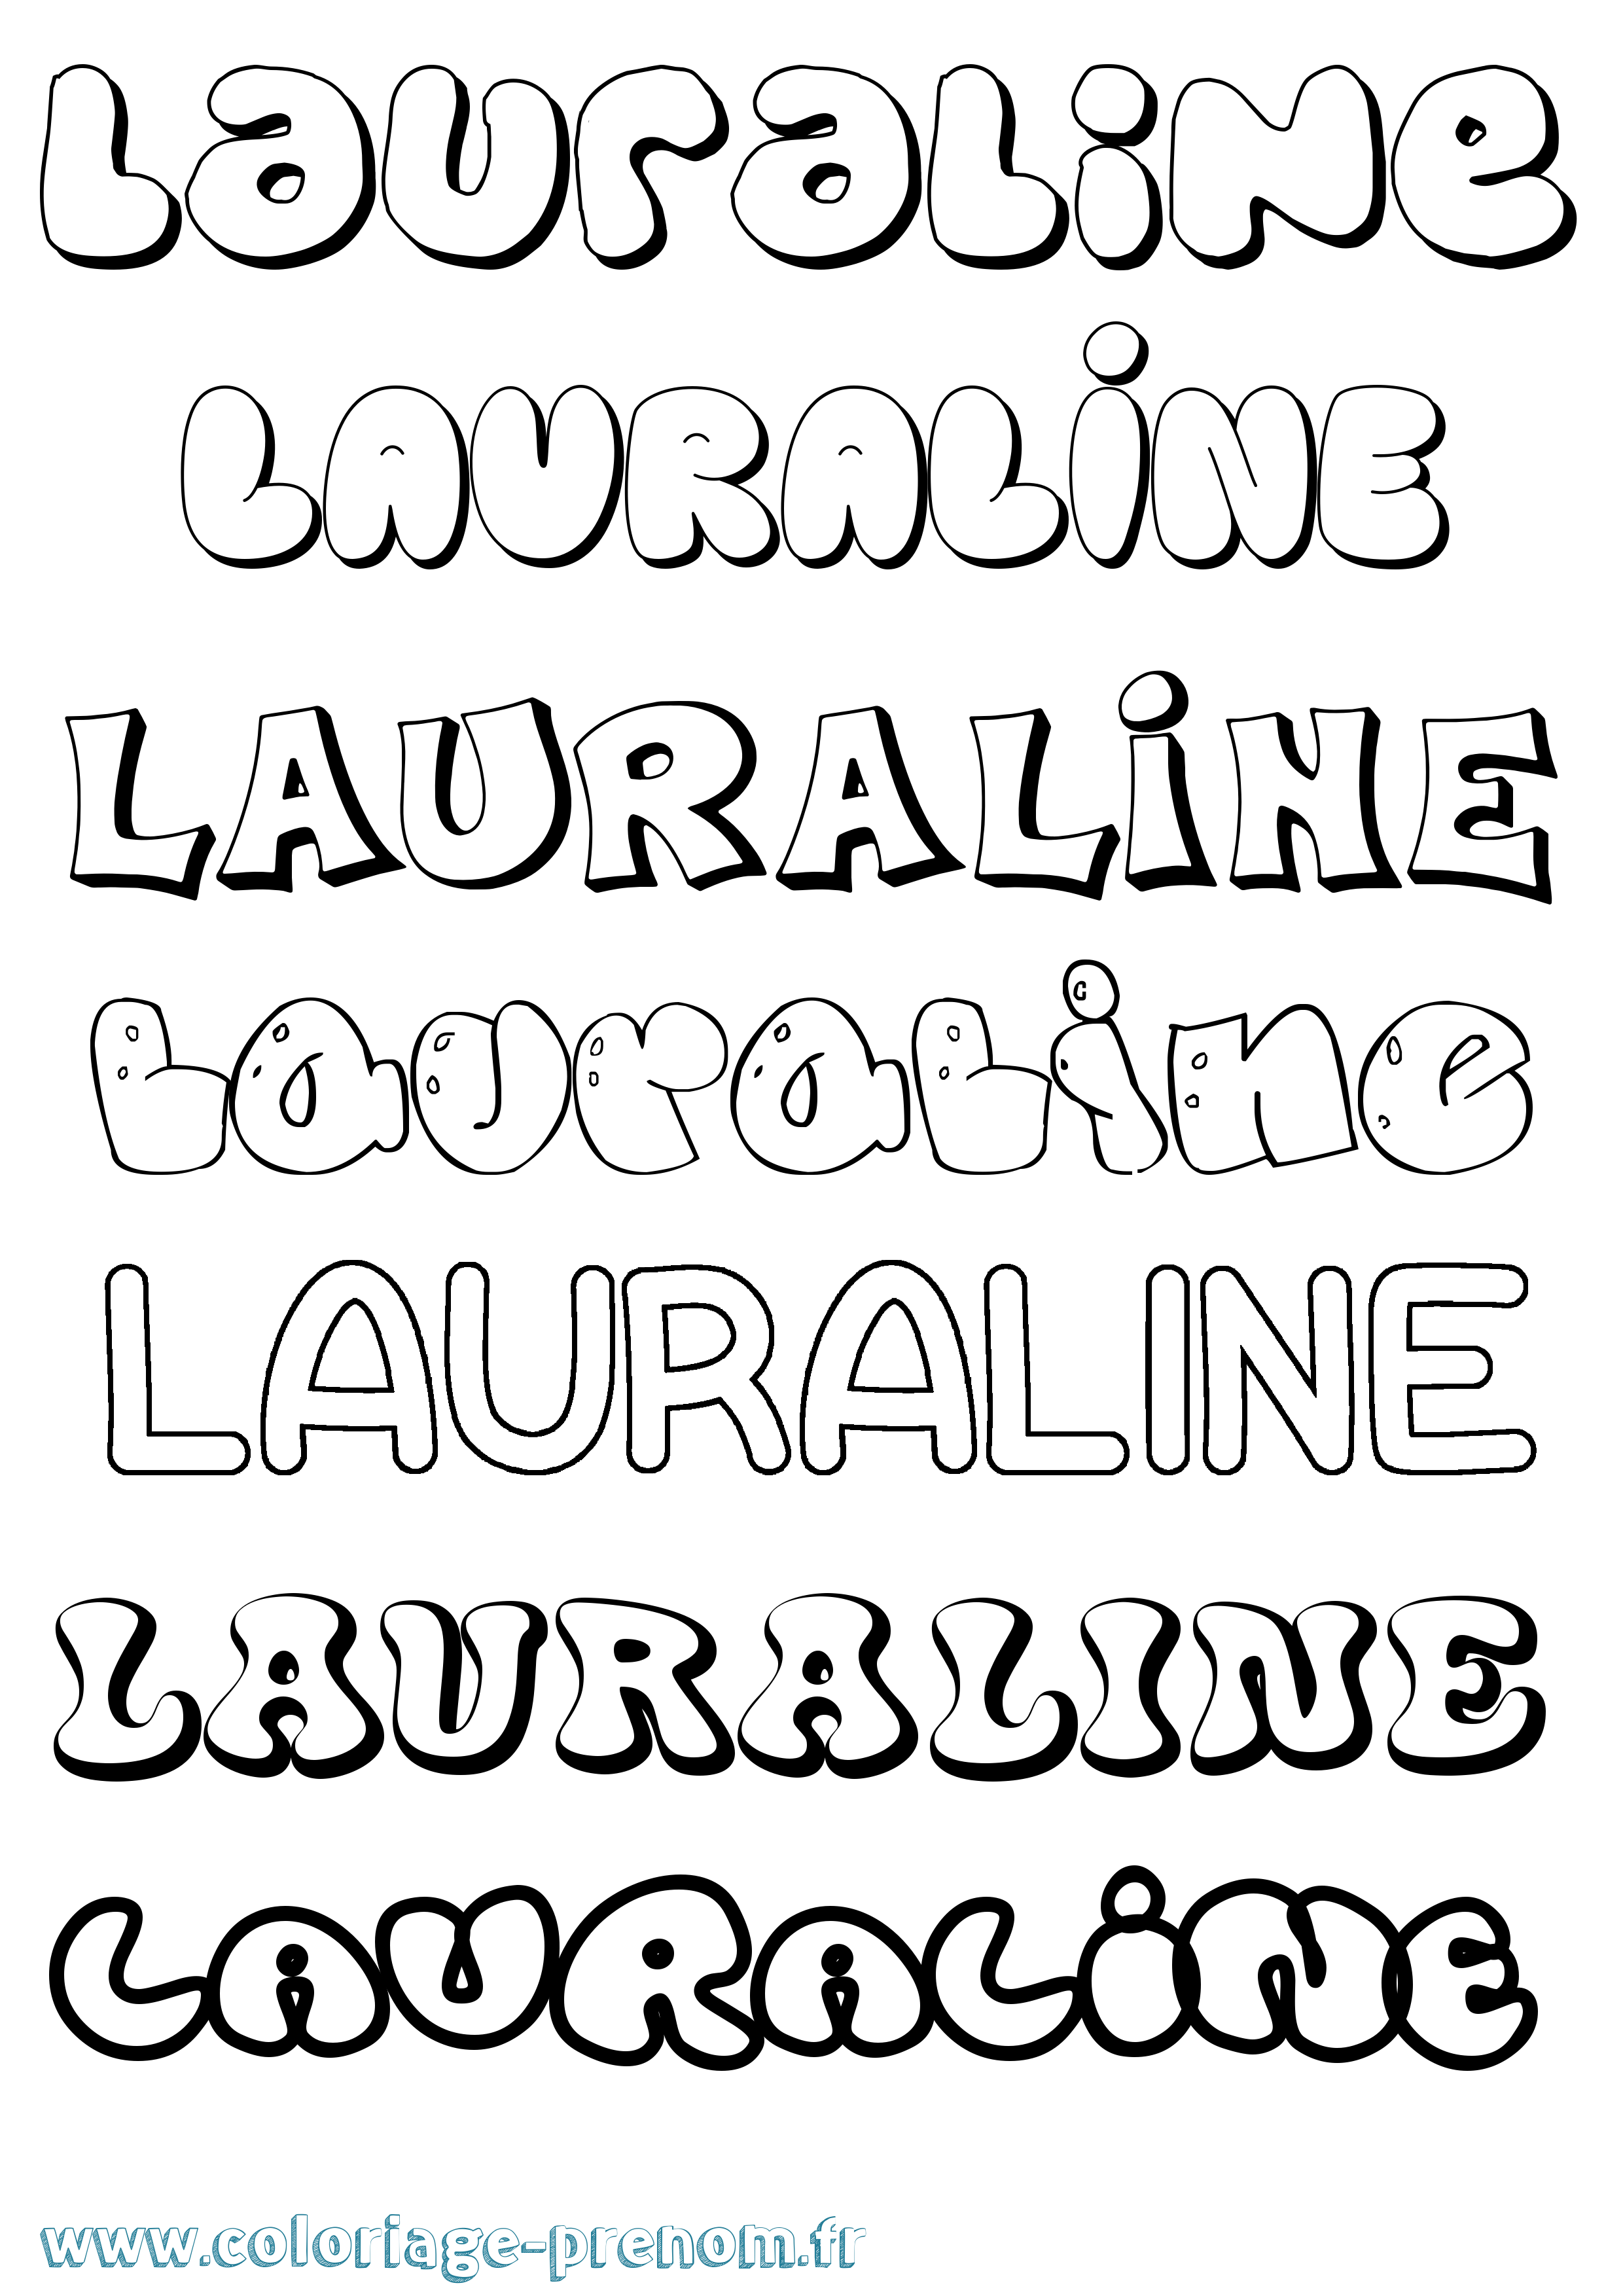 Coloriage prénom Lauraline Bubble